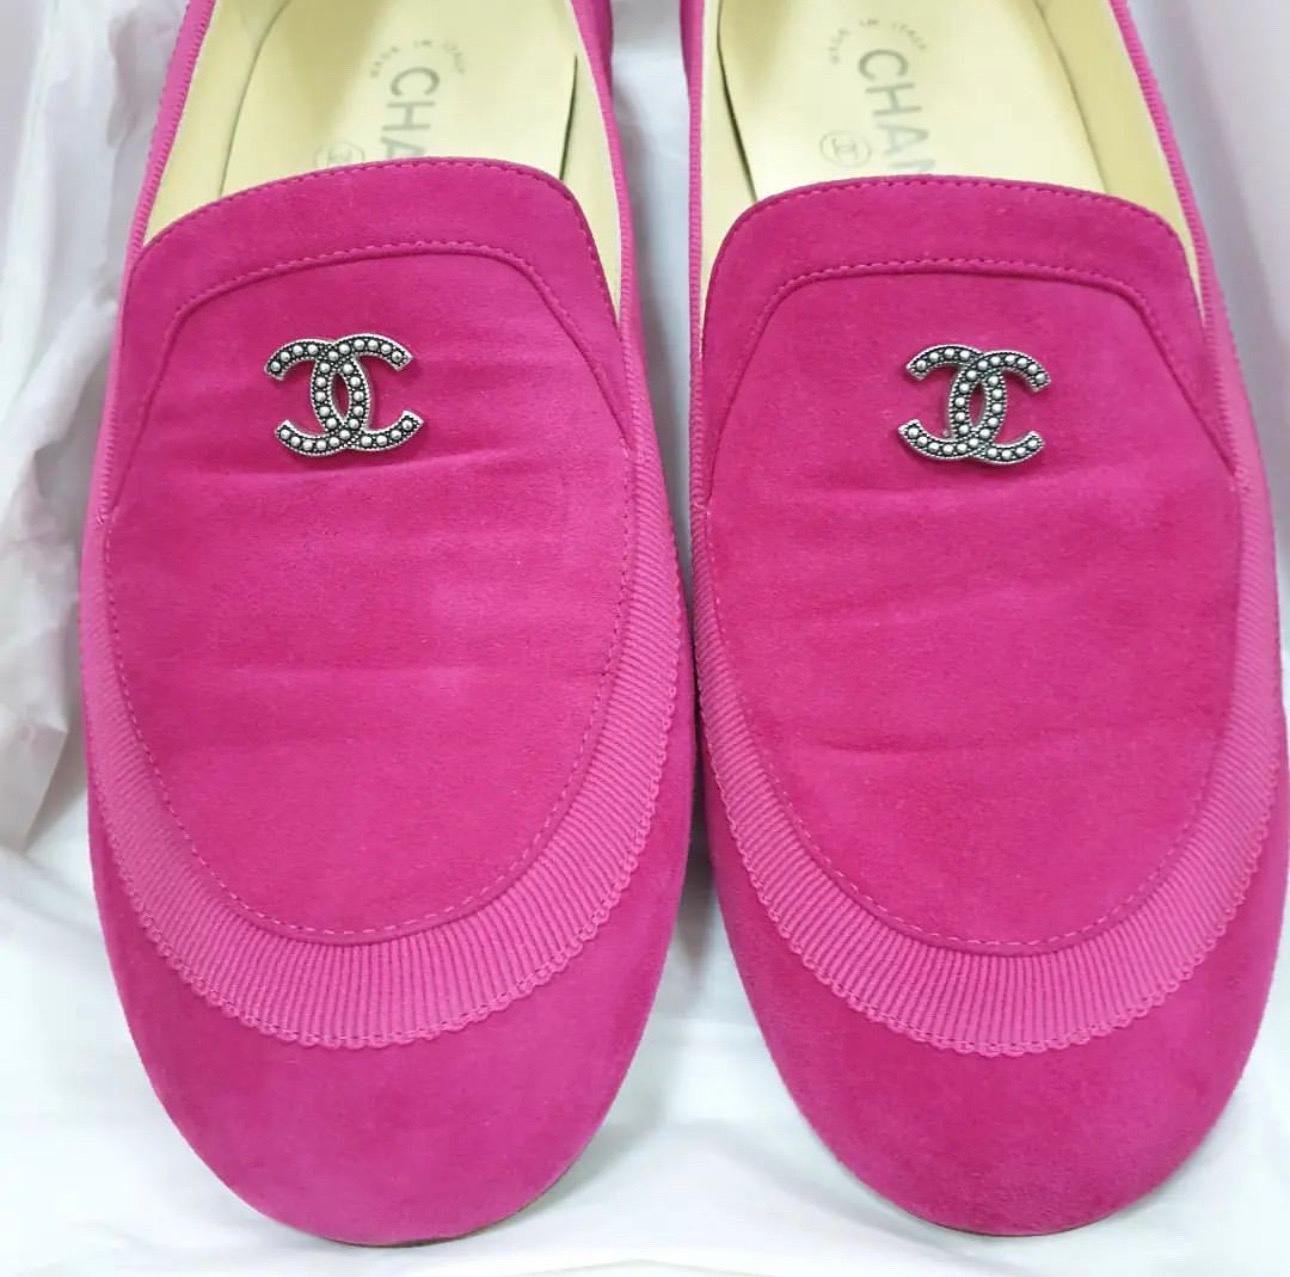 Dieses Paar Loafer von Chanel steht für Stil und Komfort und ist eine tolle Ergänzung für Ihre Schuhsammlung.
Sie sind aus hochwertigem Wildleder gefertigt und mit dem CC-Logo auf dem Obermaterial versehen. 
Innensohlen aus Leder, silberfarbene